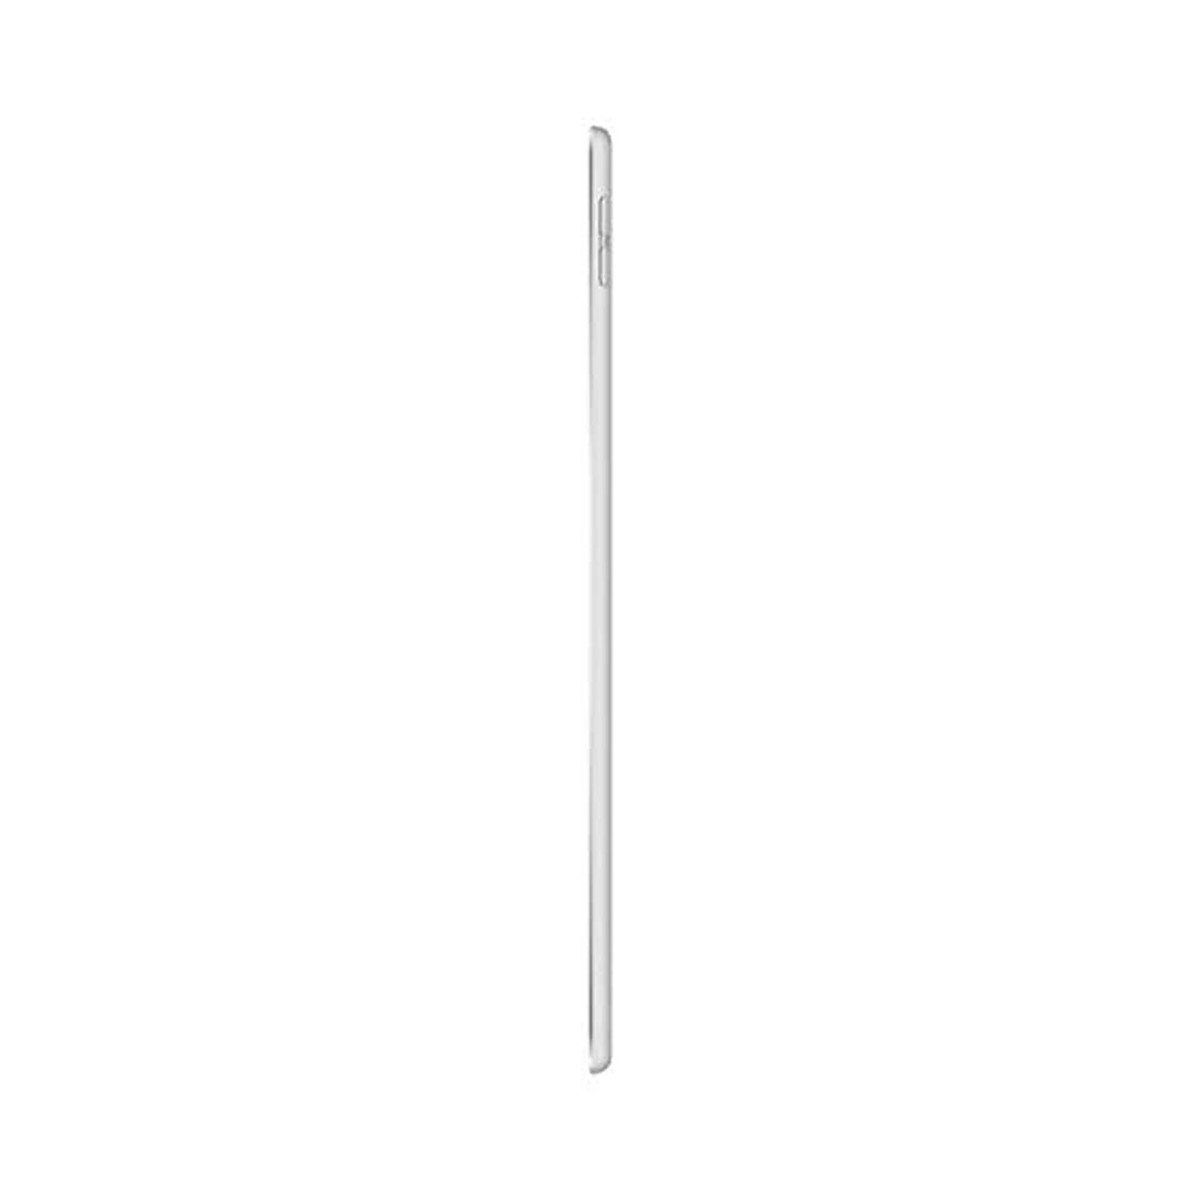 Apple iPad Air (2019) - iOS (Wi-Fi, 256GB)GB 10.5inch Silver